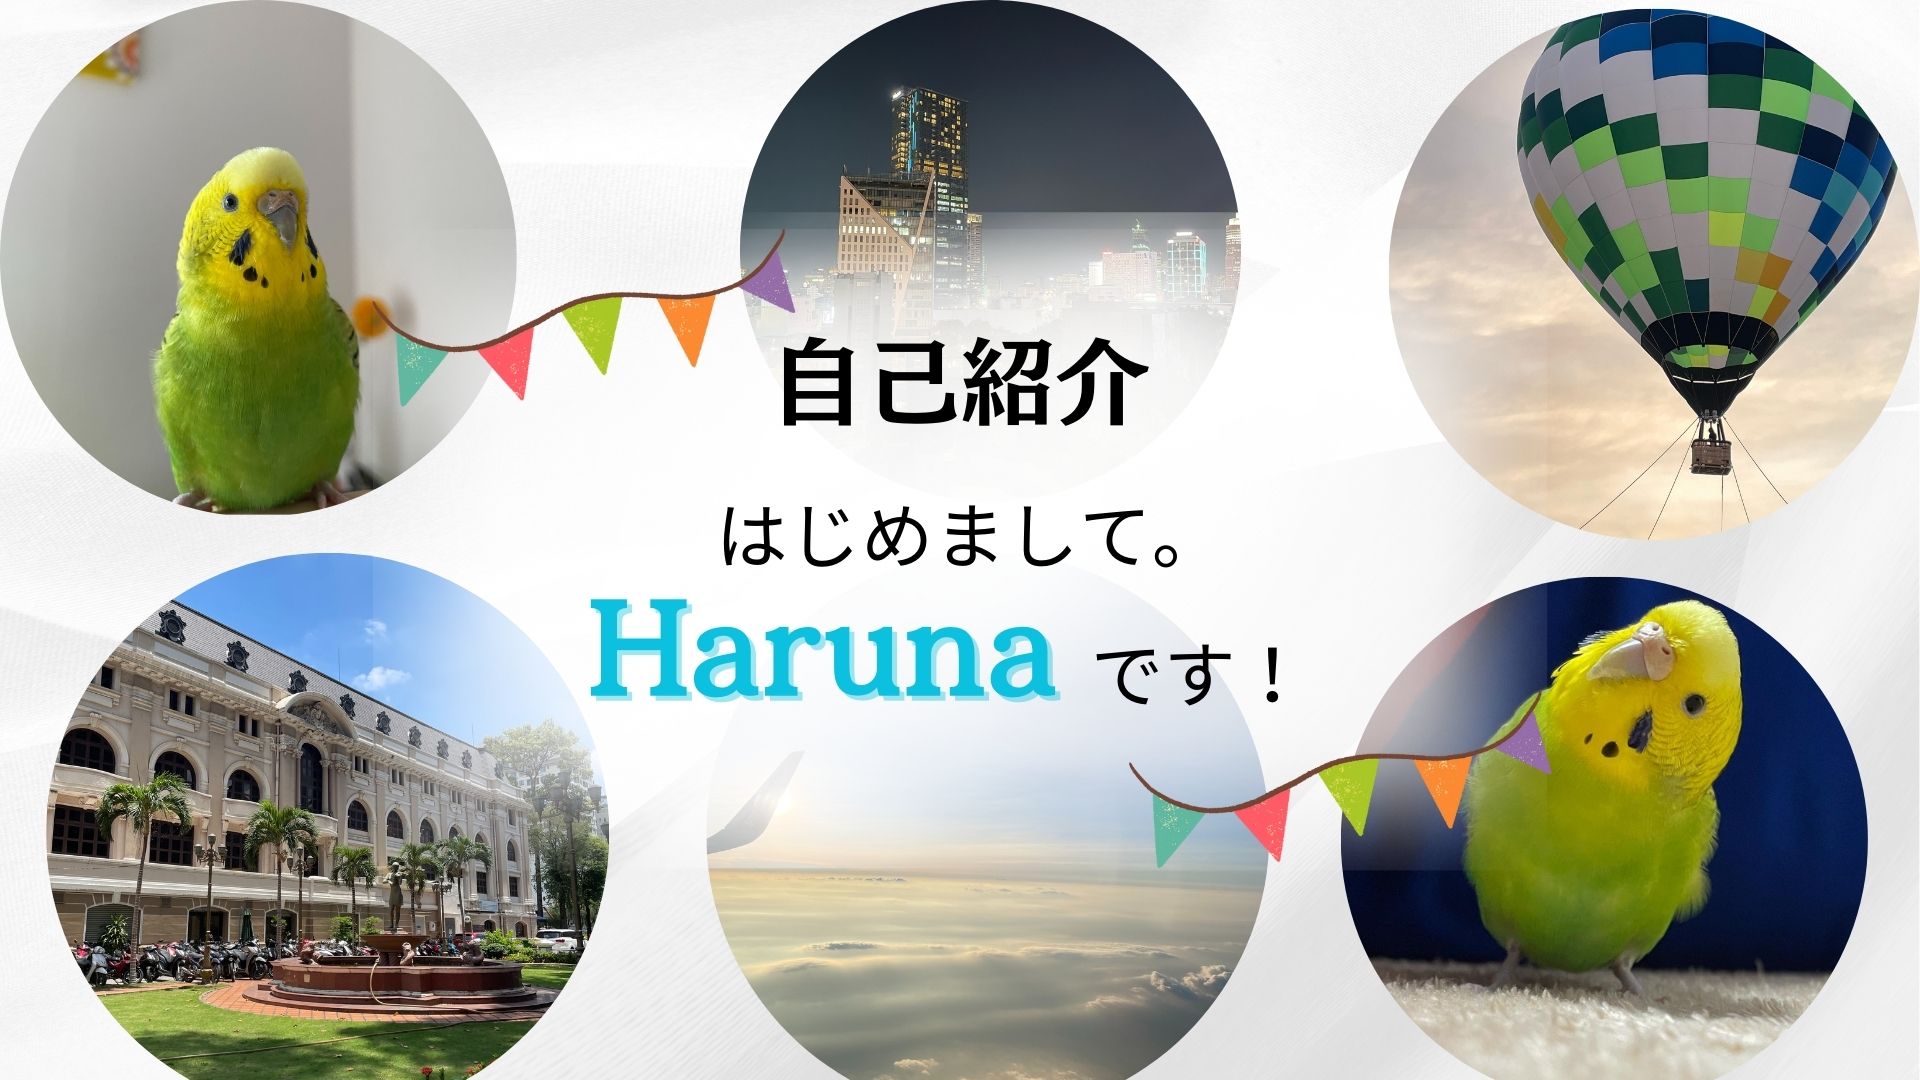 こんにちは！はじめまして、Harunaです。